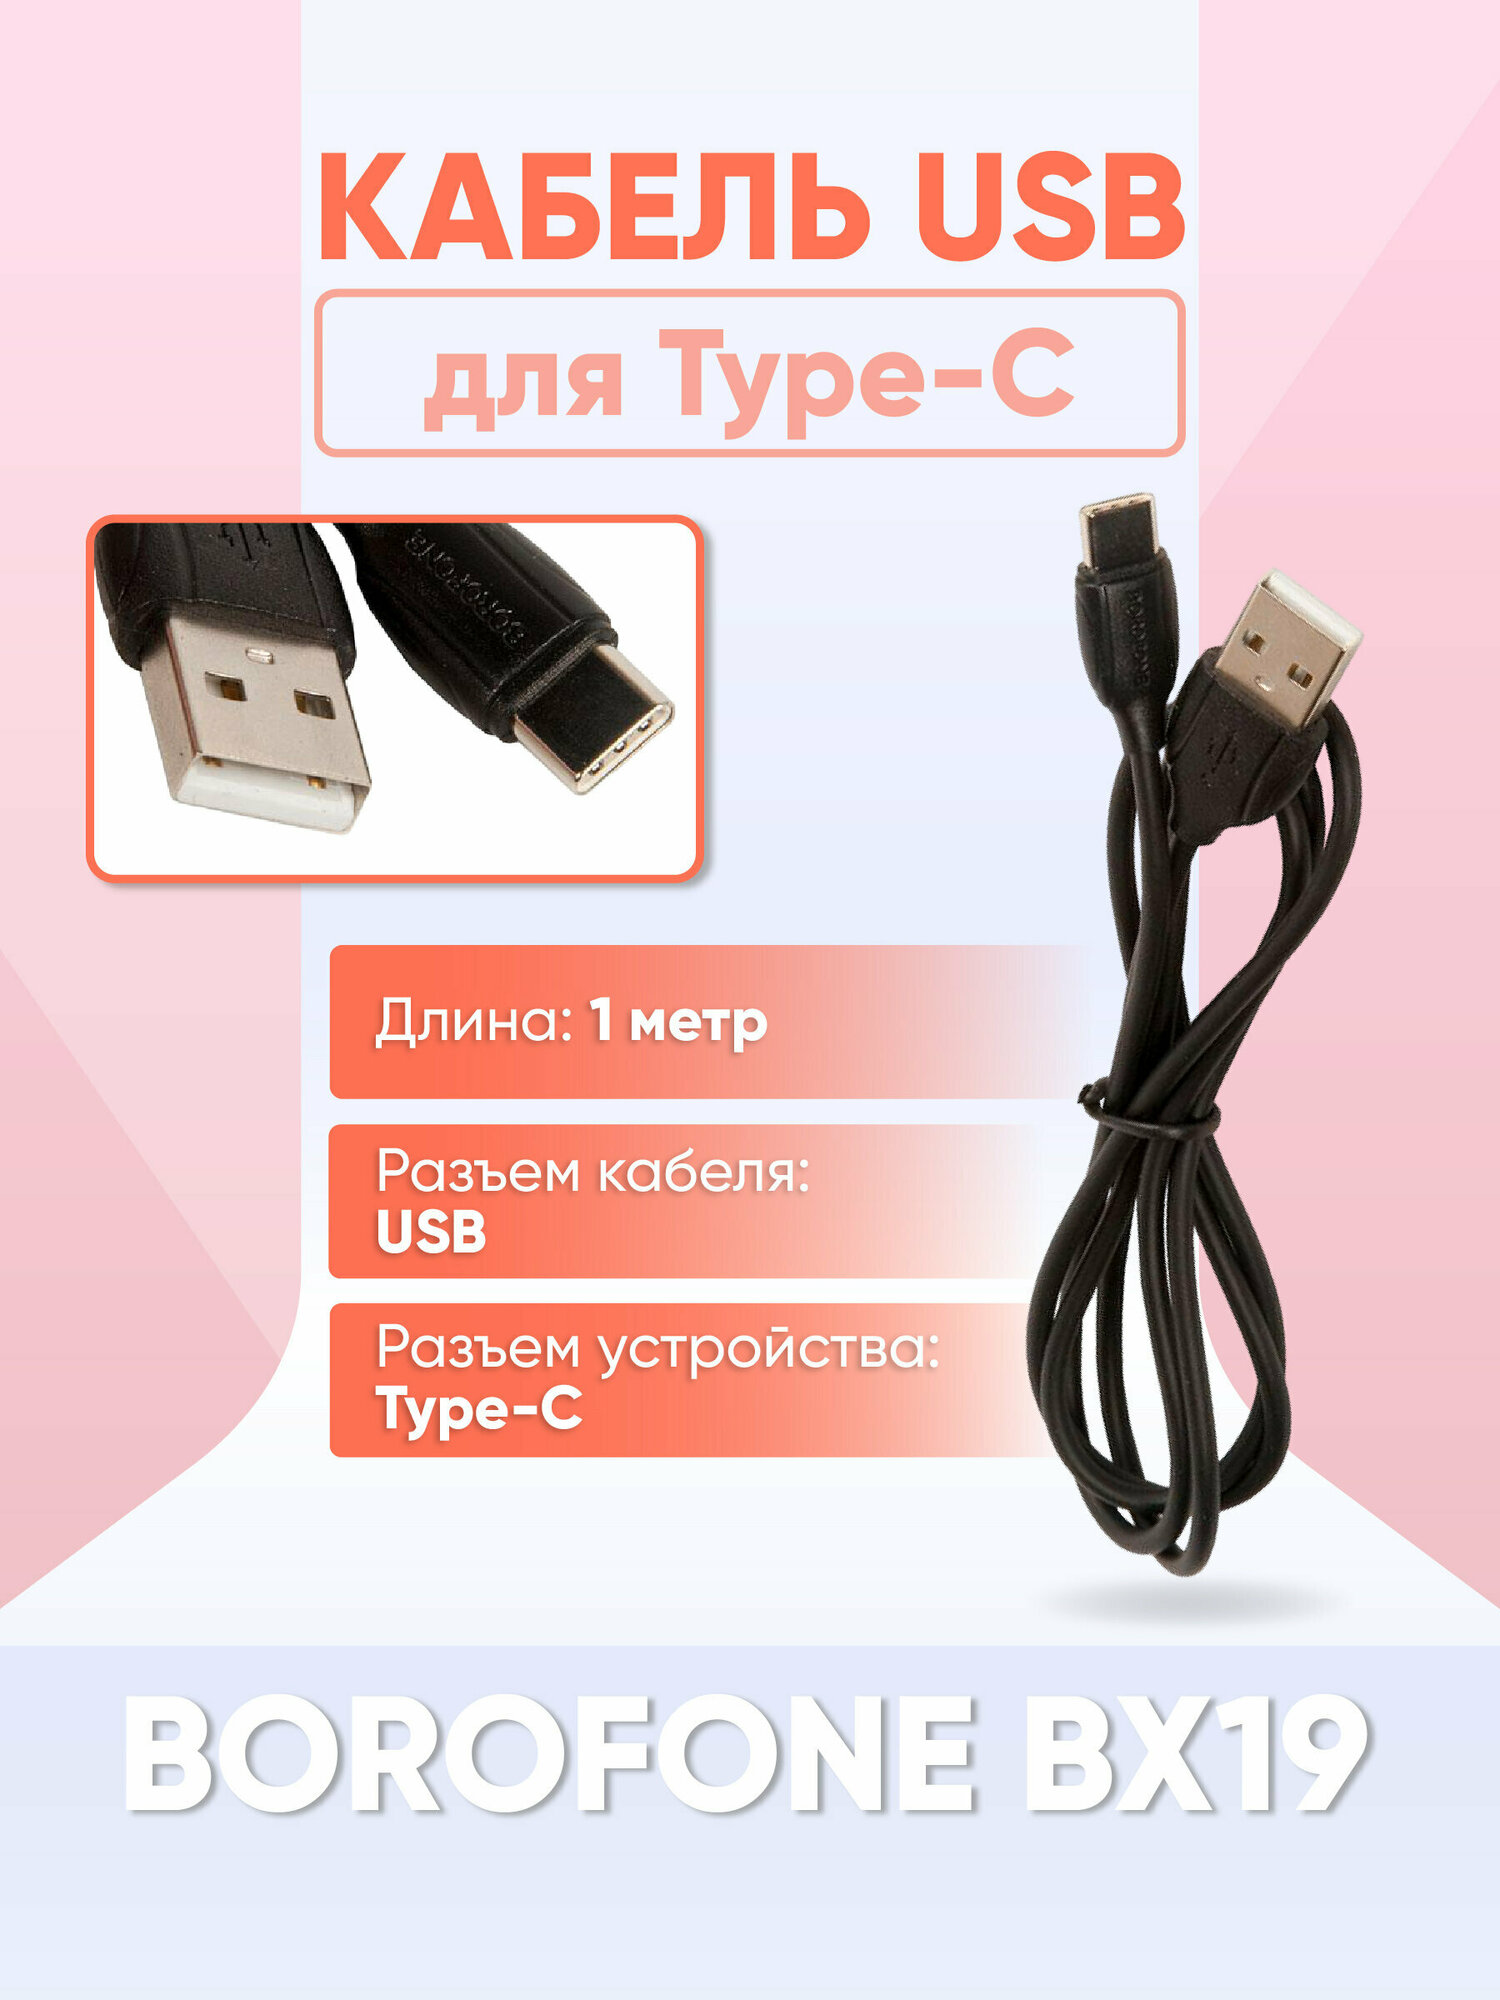 Кабель USB BOROFONE BX19 для Type-C, 3.0A, длина 1 м, черный / для Asus, Lenovo, Samsung, Sony, Xiaomi, Apple, OnePlus, Realme, Honor, Huawei и др.